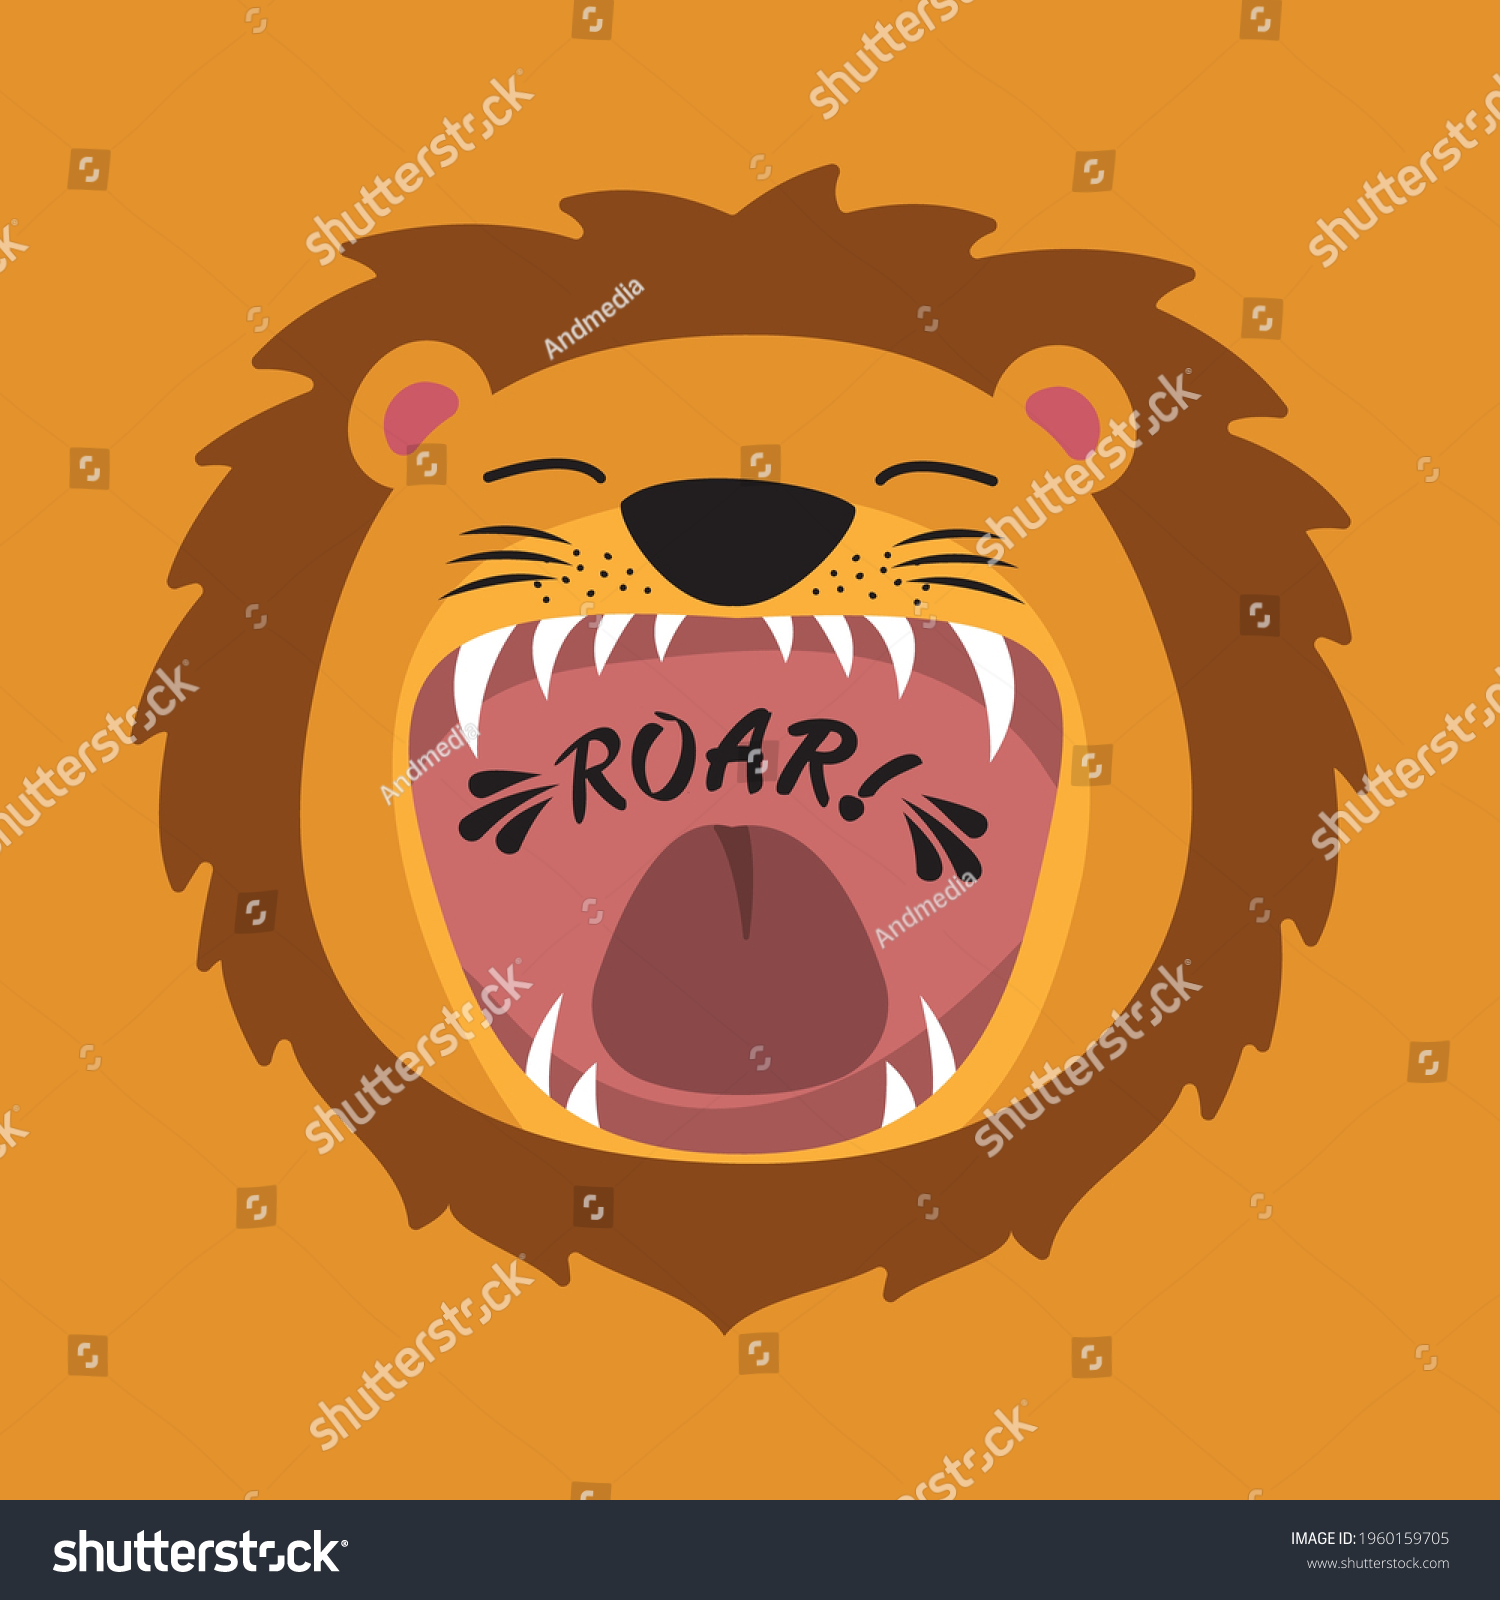 Картинки мультяшного Льва с открытым ртом